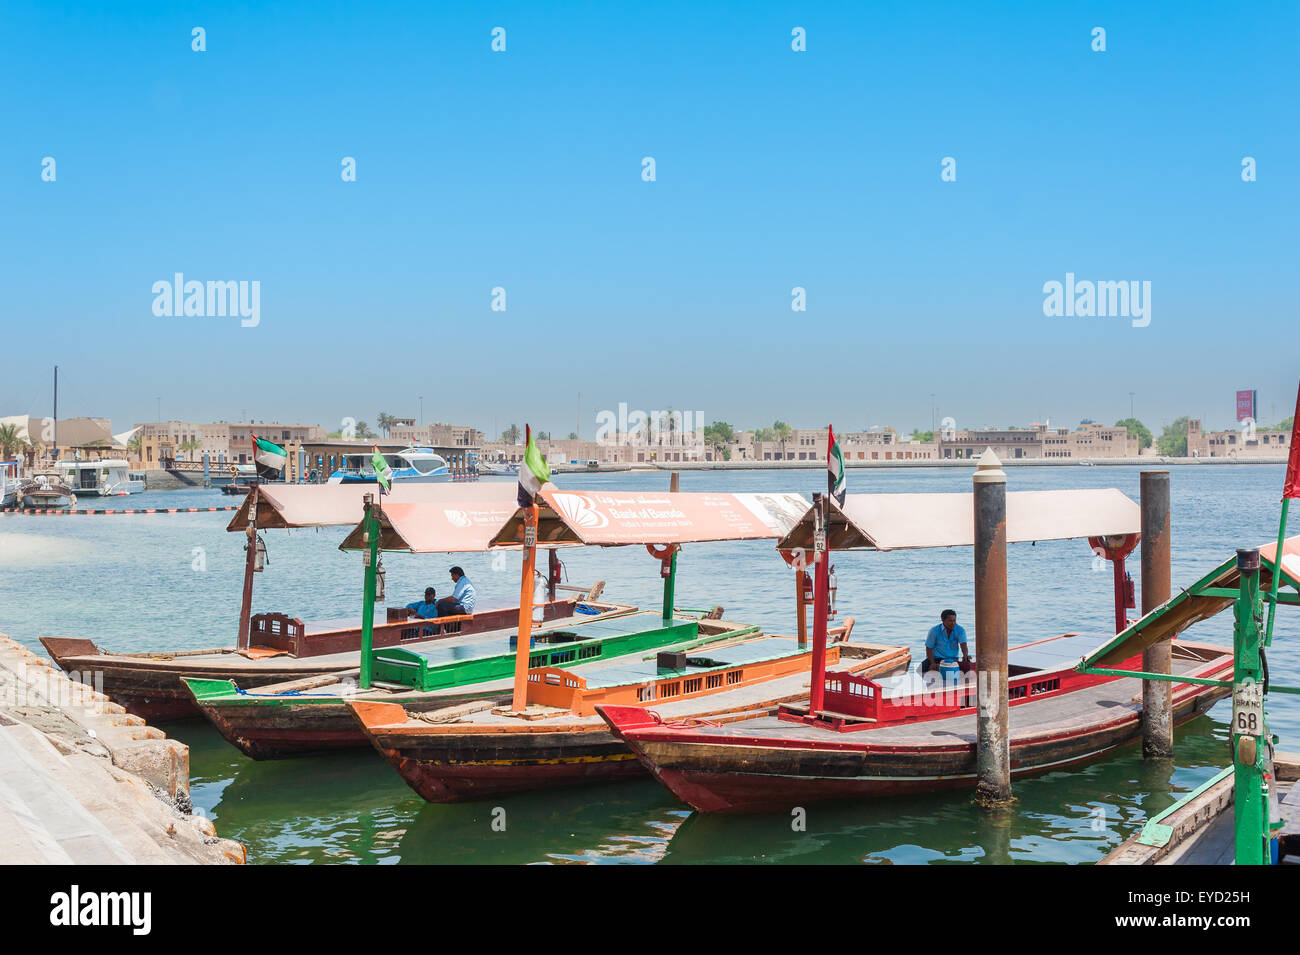 Dubai, Emirati Arabi Uniti - 9 giugno 2015 : funzioni di imbarcazioni per il trasporto di persone sul fiume Creek di Dubai Foto Stock